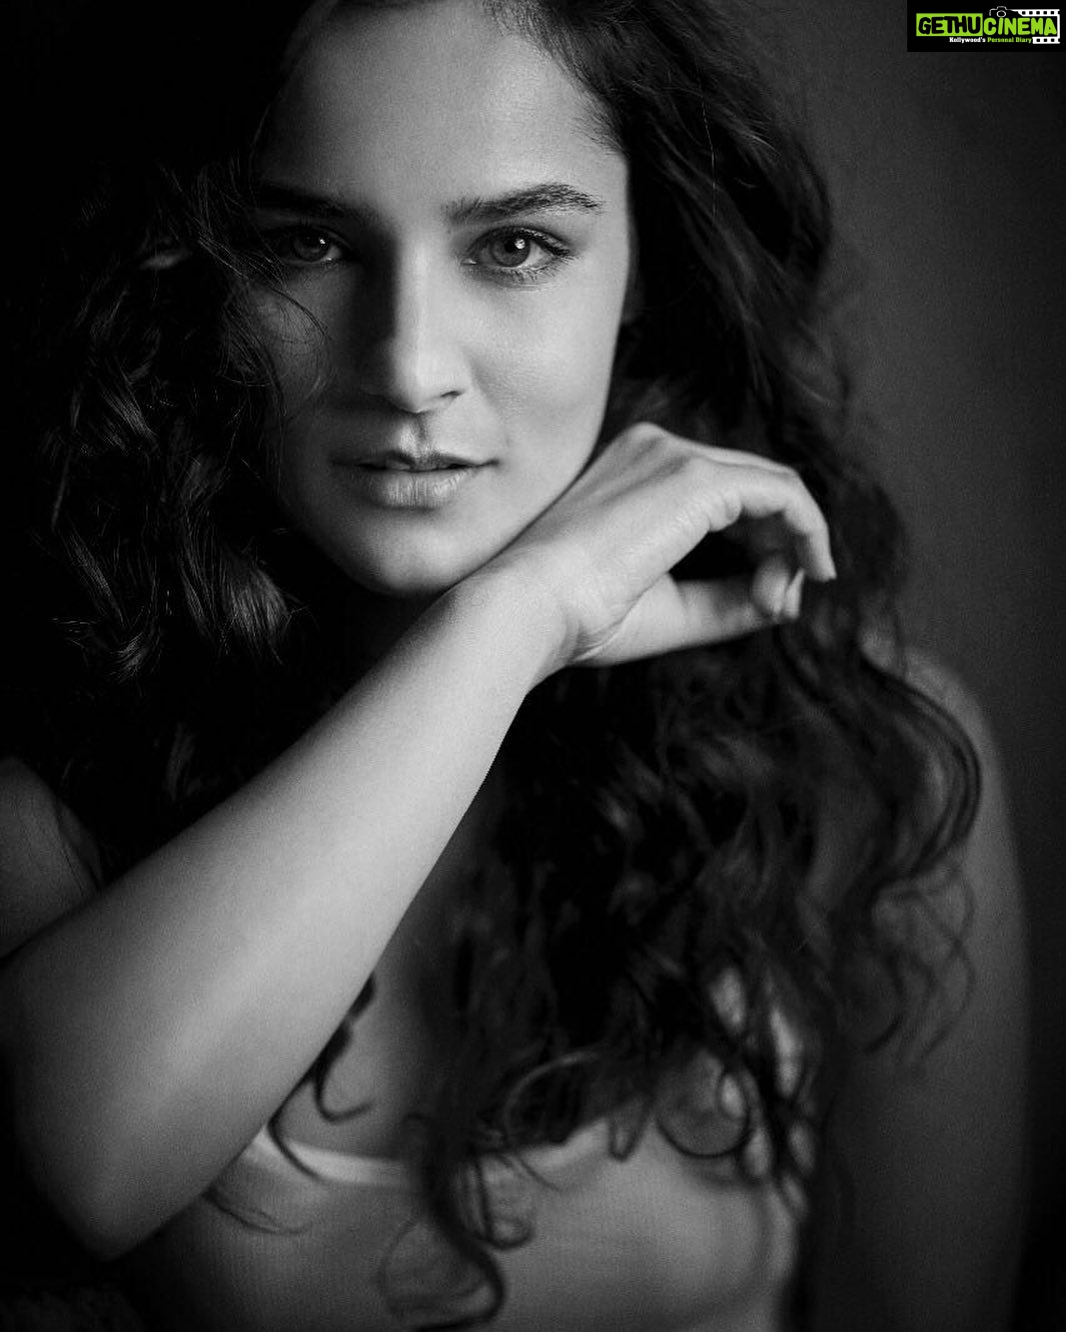 Actress Angira Dhar Instagram Photos and Posts - September 2019 - Gethu ...